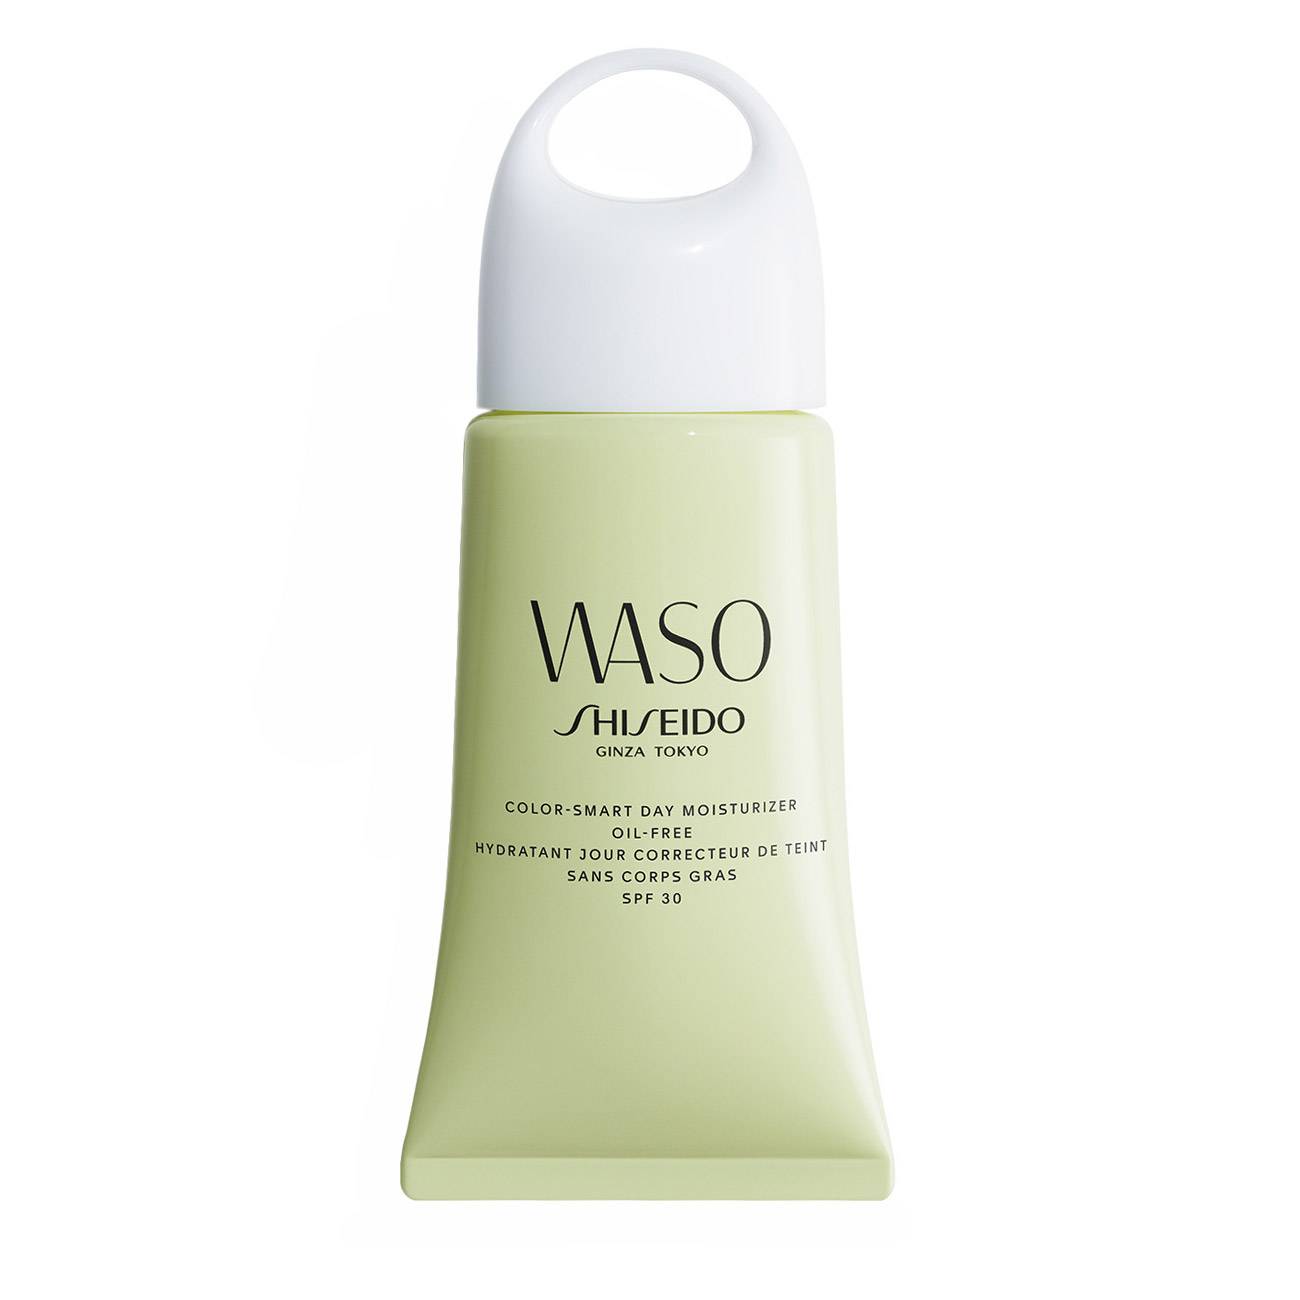 Crema hidratanta Shiseido WASO COLOR SMART DAY MOISTURIZER 50 Ml cu comanda online